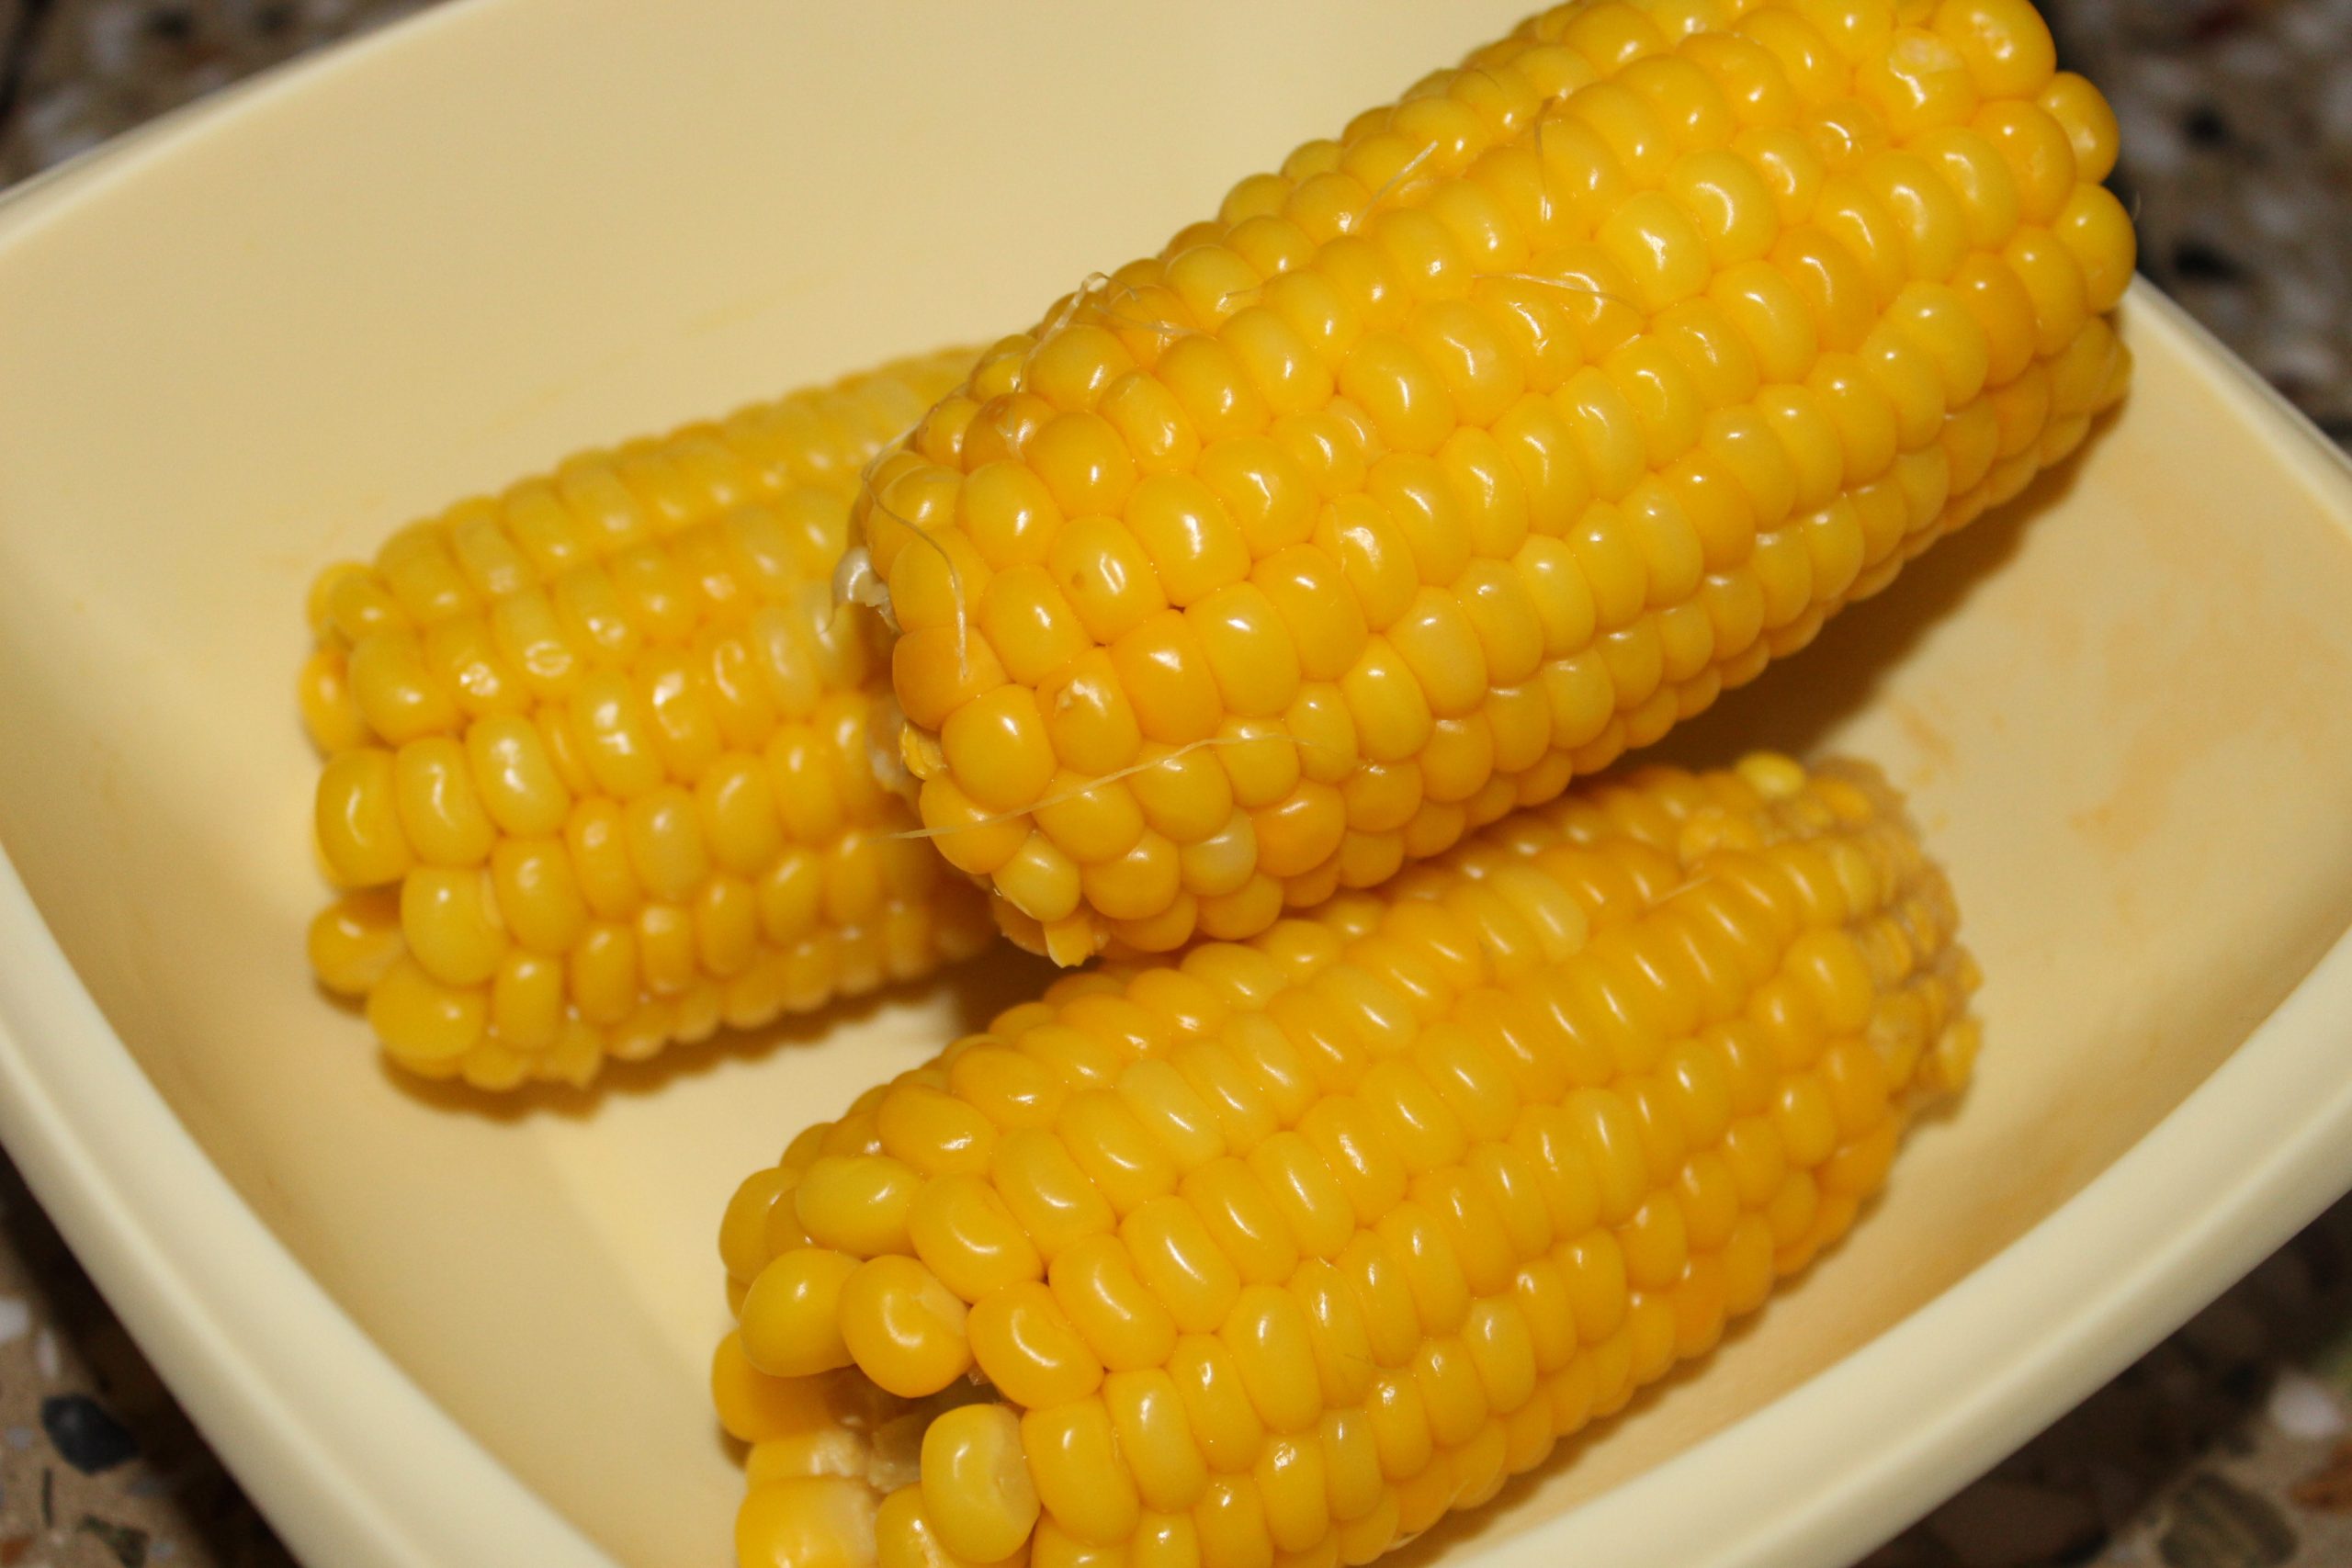 A Corn in a Plate